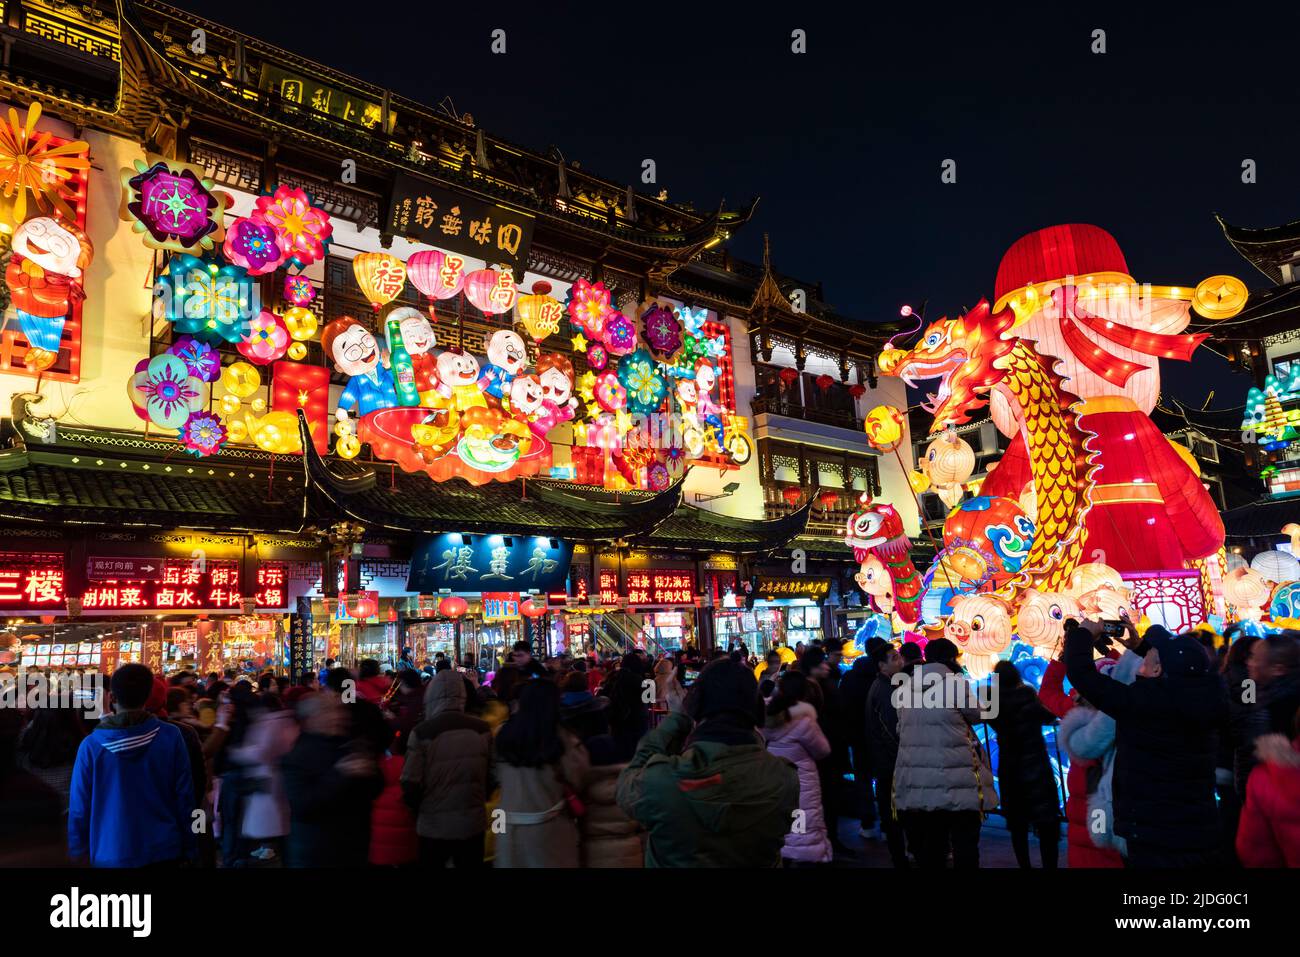 Una folla di turisti a piedi lungo le viuzze di Yu Yuan, Yu Garden, per ammirare l'esposizione di lanterne durante il festival lanterna nell'anno del Pig. Foto Stock